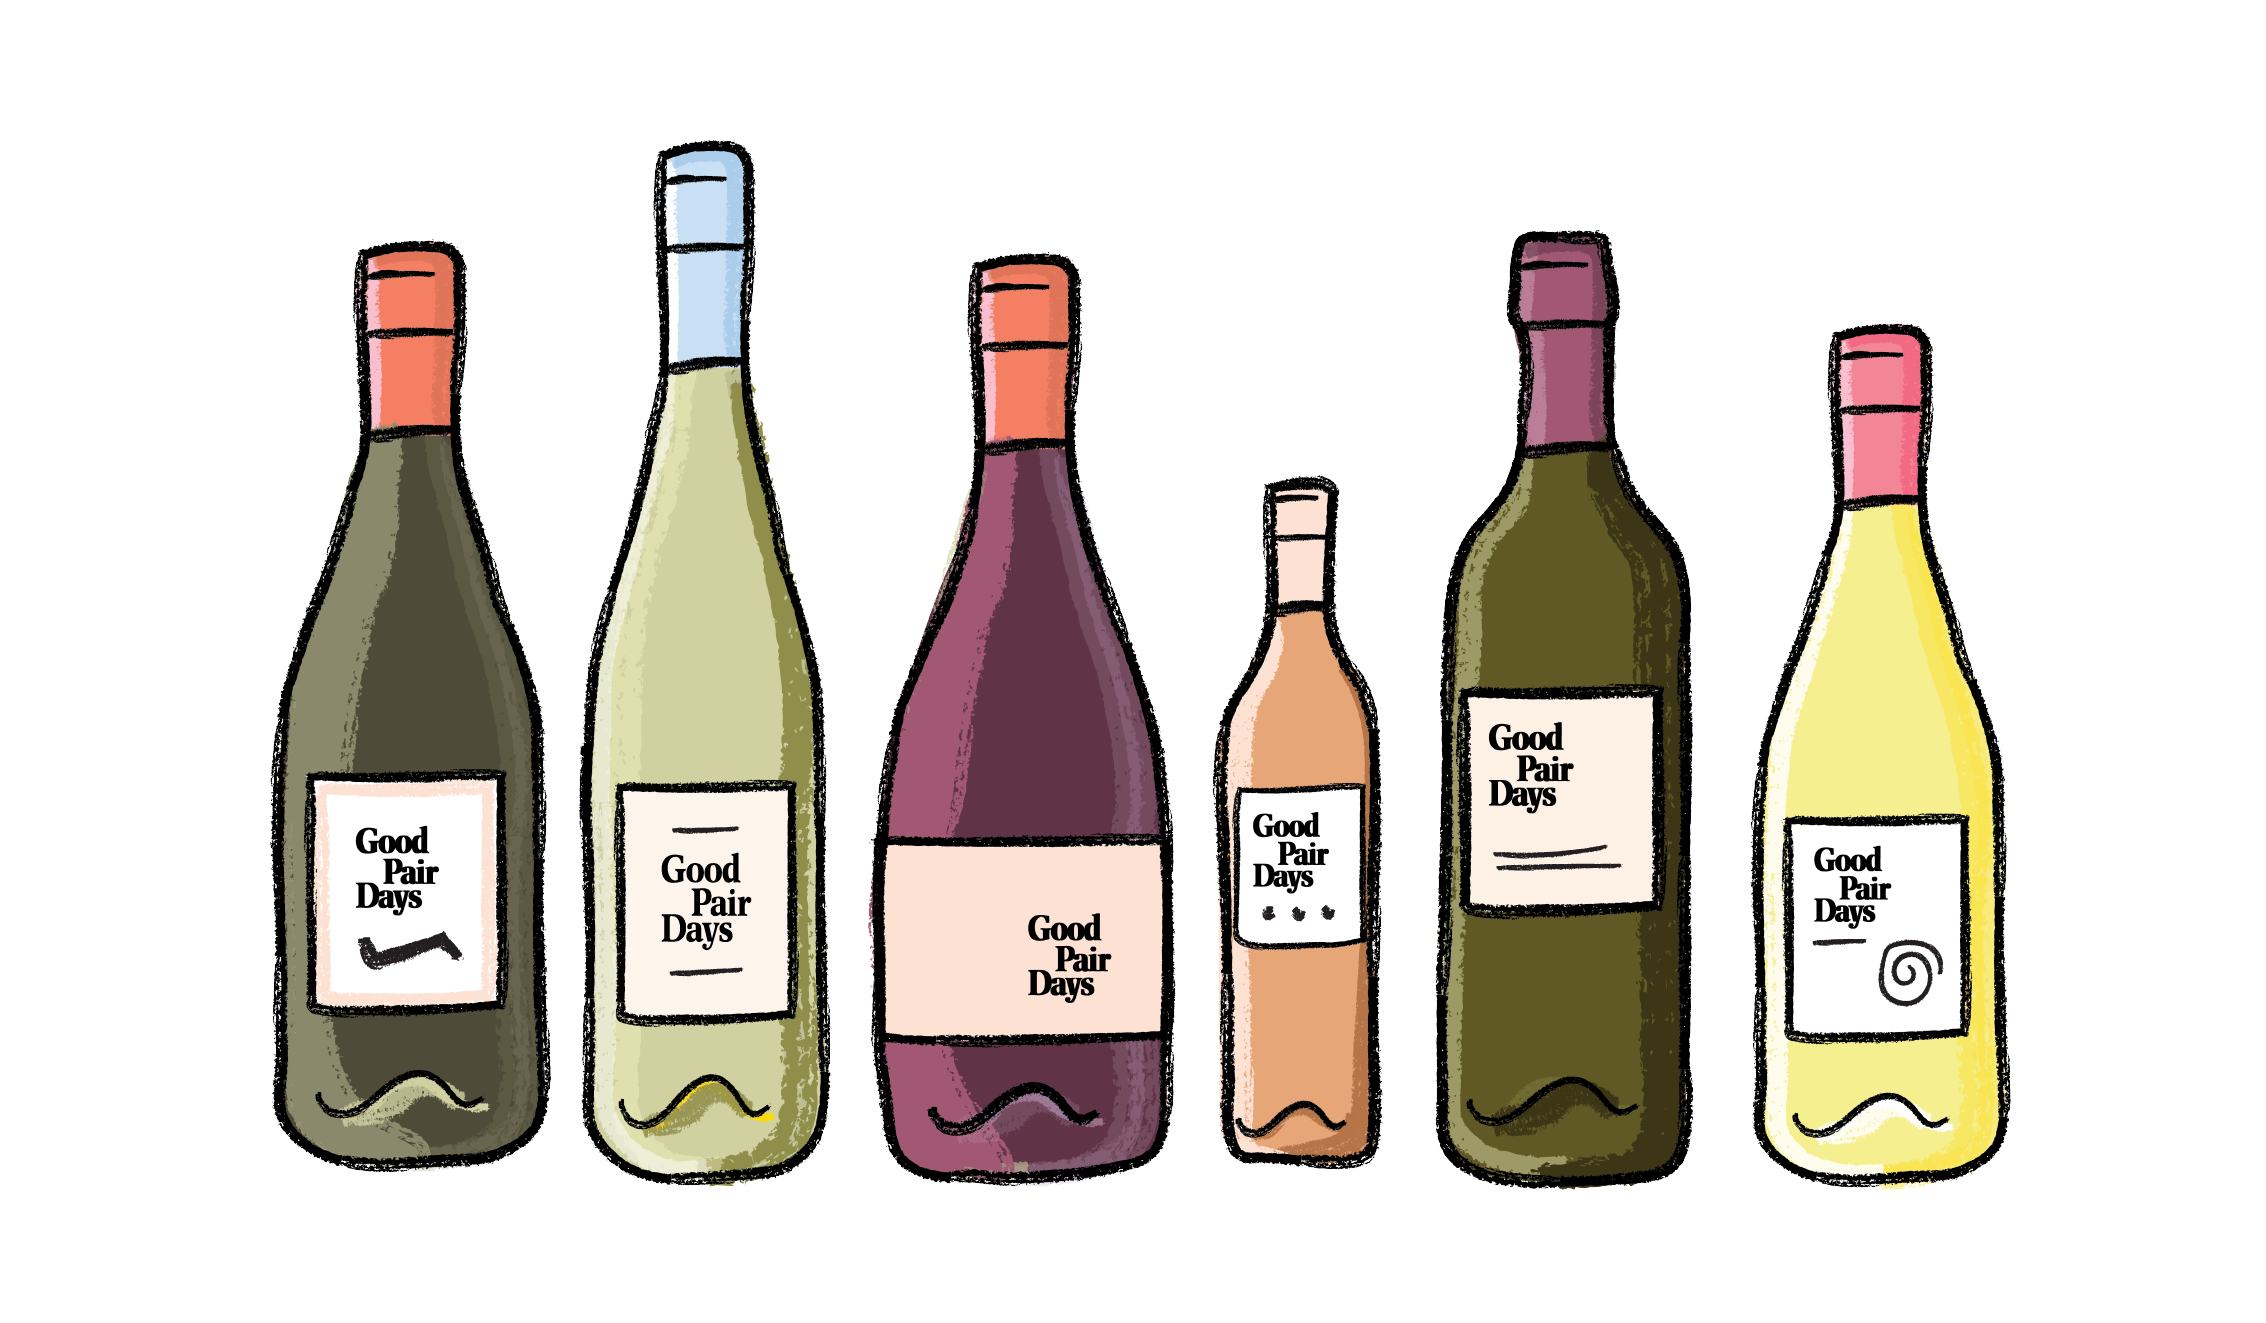 Main wine style bottles